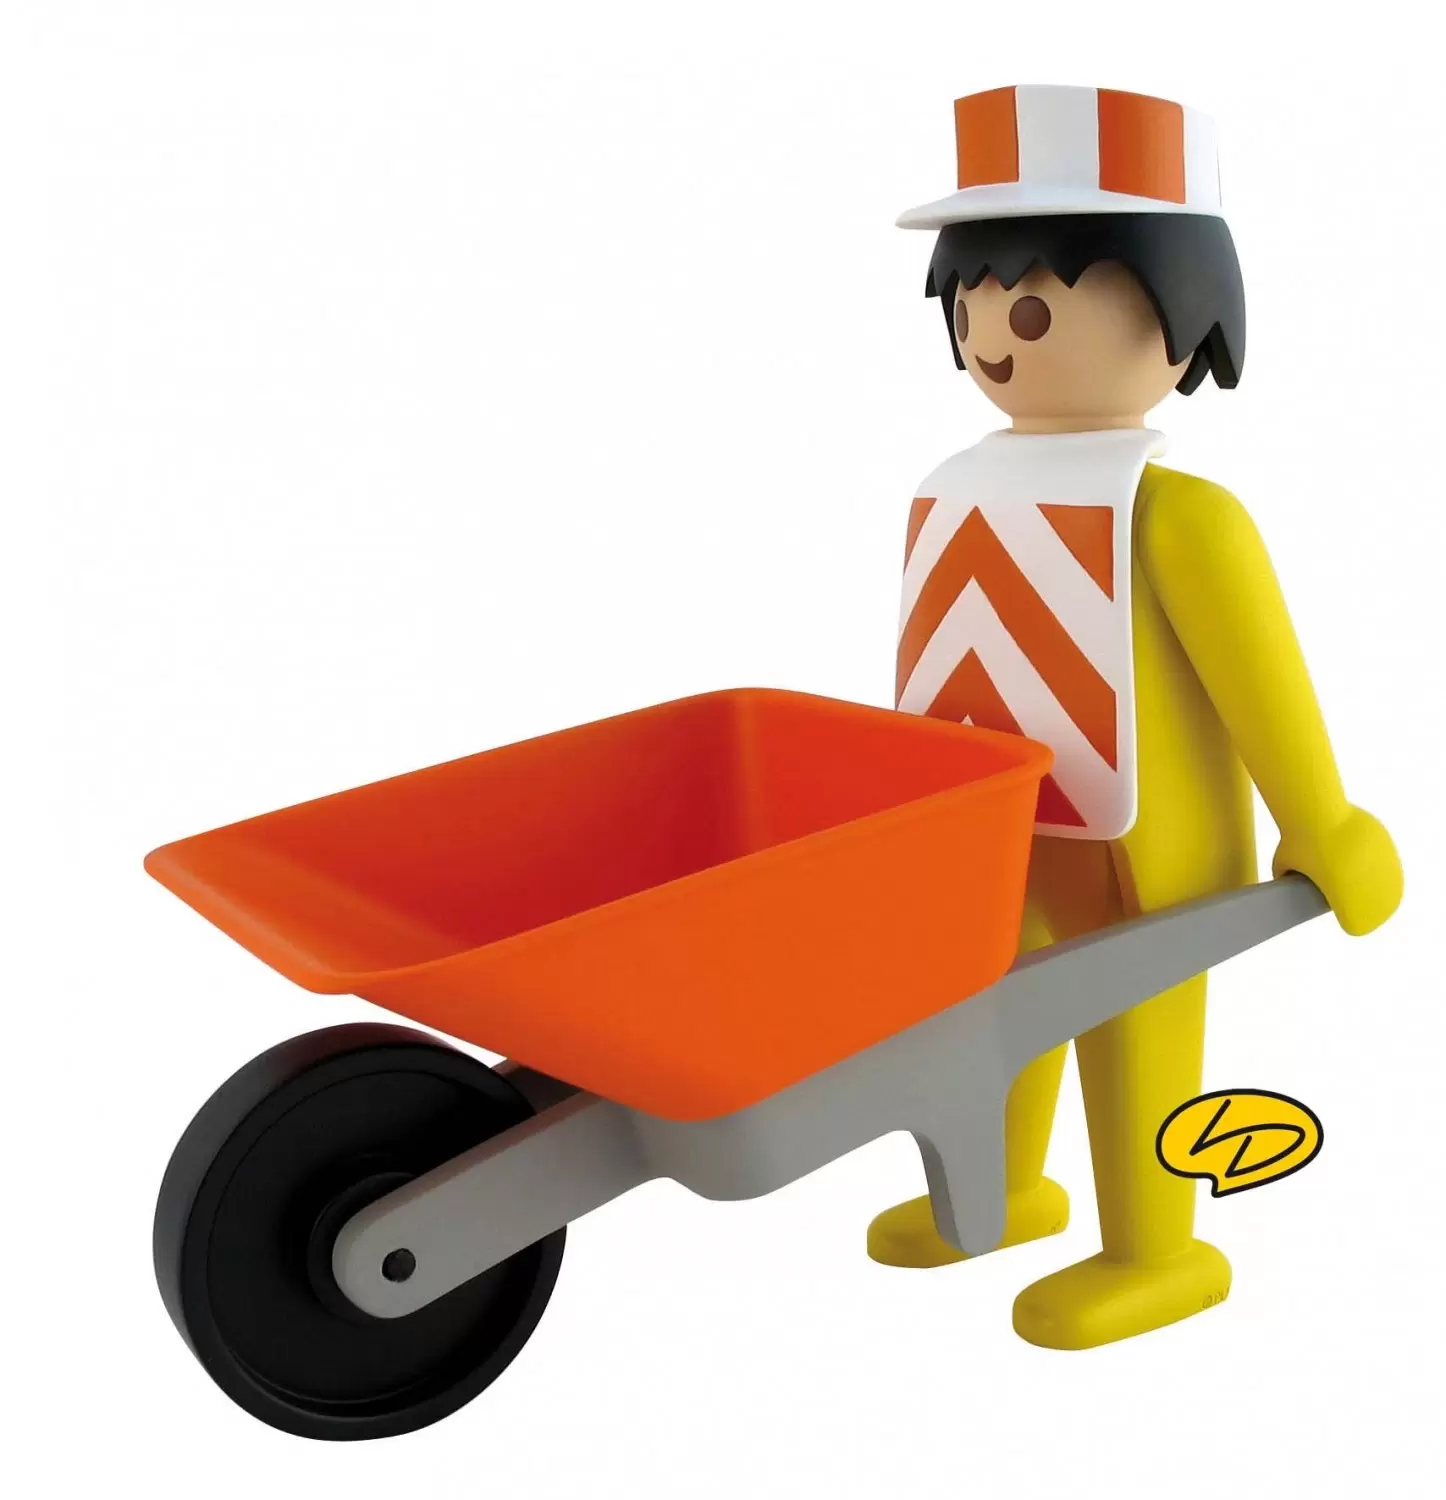 Playmobil Leblon Delienne - Worker with wheelbarrow